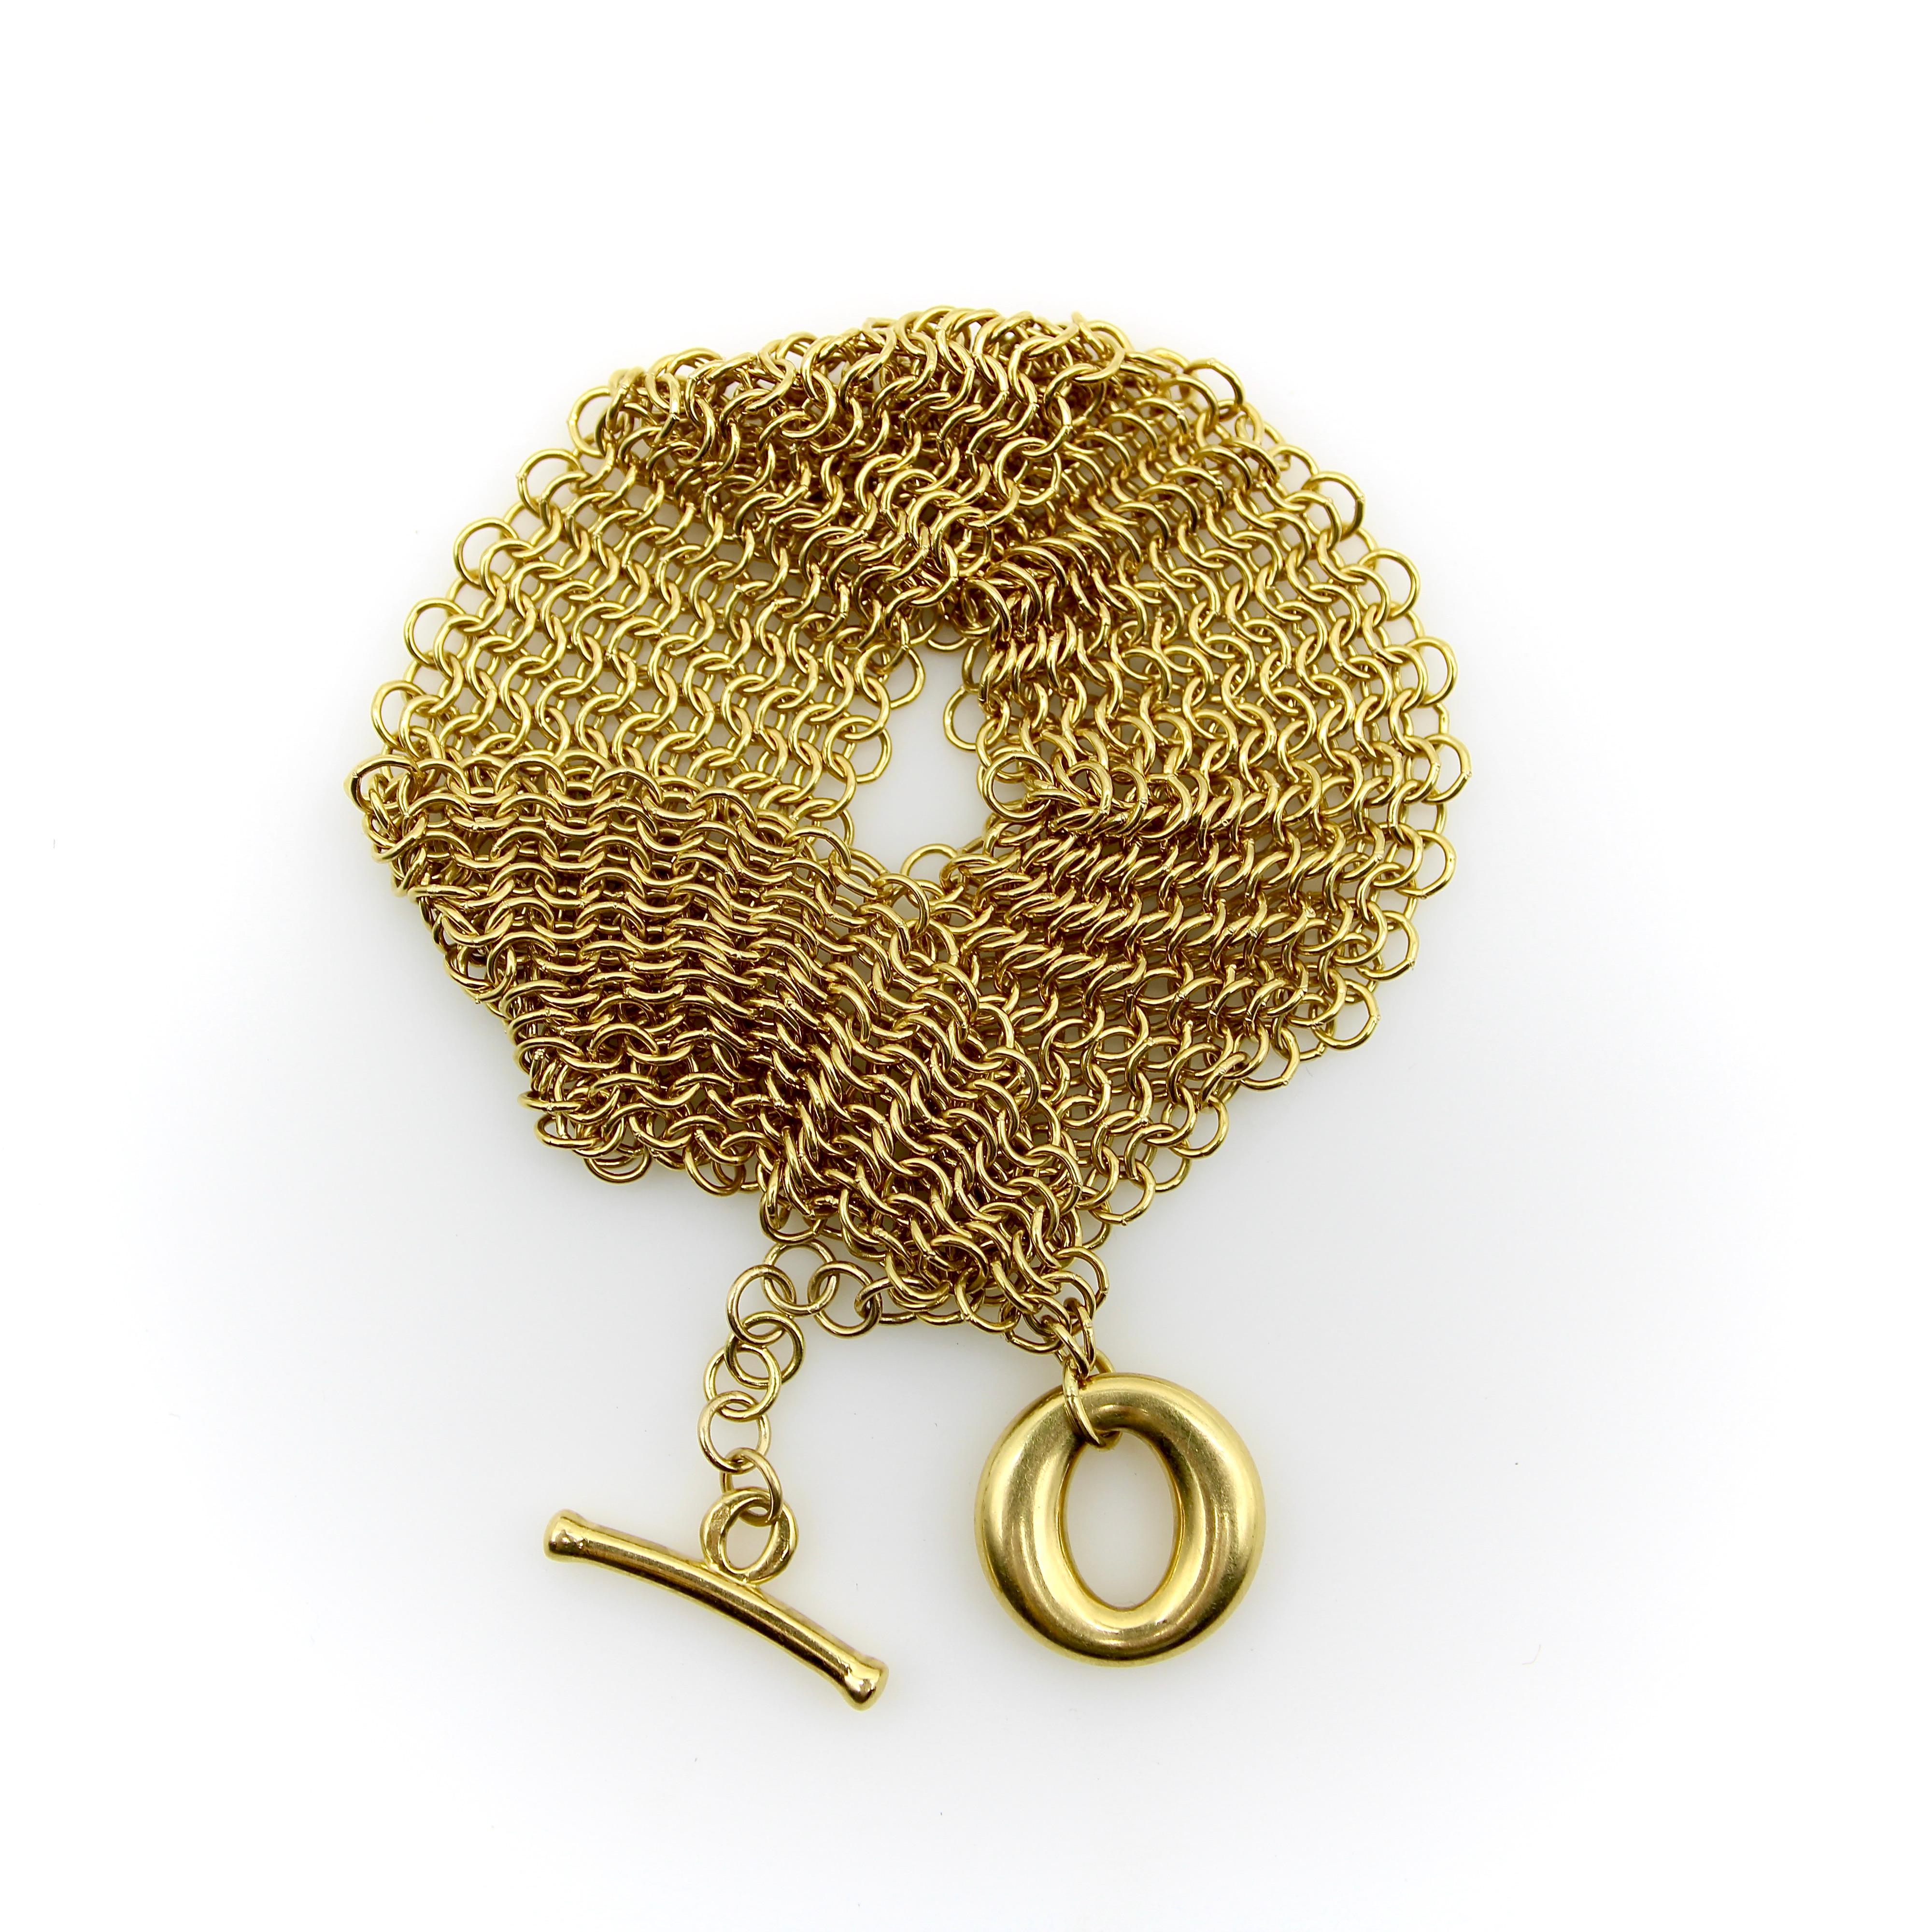 Das von Elsa Peretti für Tiffany & Co. entworfene Somerset-Armband aus 18 Karat Gold ist ein wunderschönes, fließendes Stück, das sich elegant um das Handgelenk legt. Lagen kreisförmiger Goldglieder sind zu einem goldenen Geflecht verwoben, das an